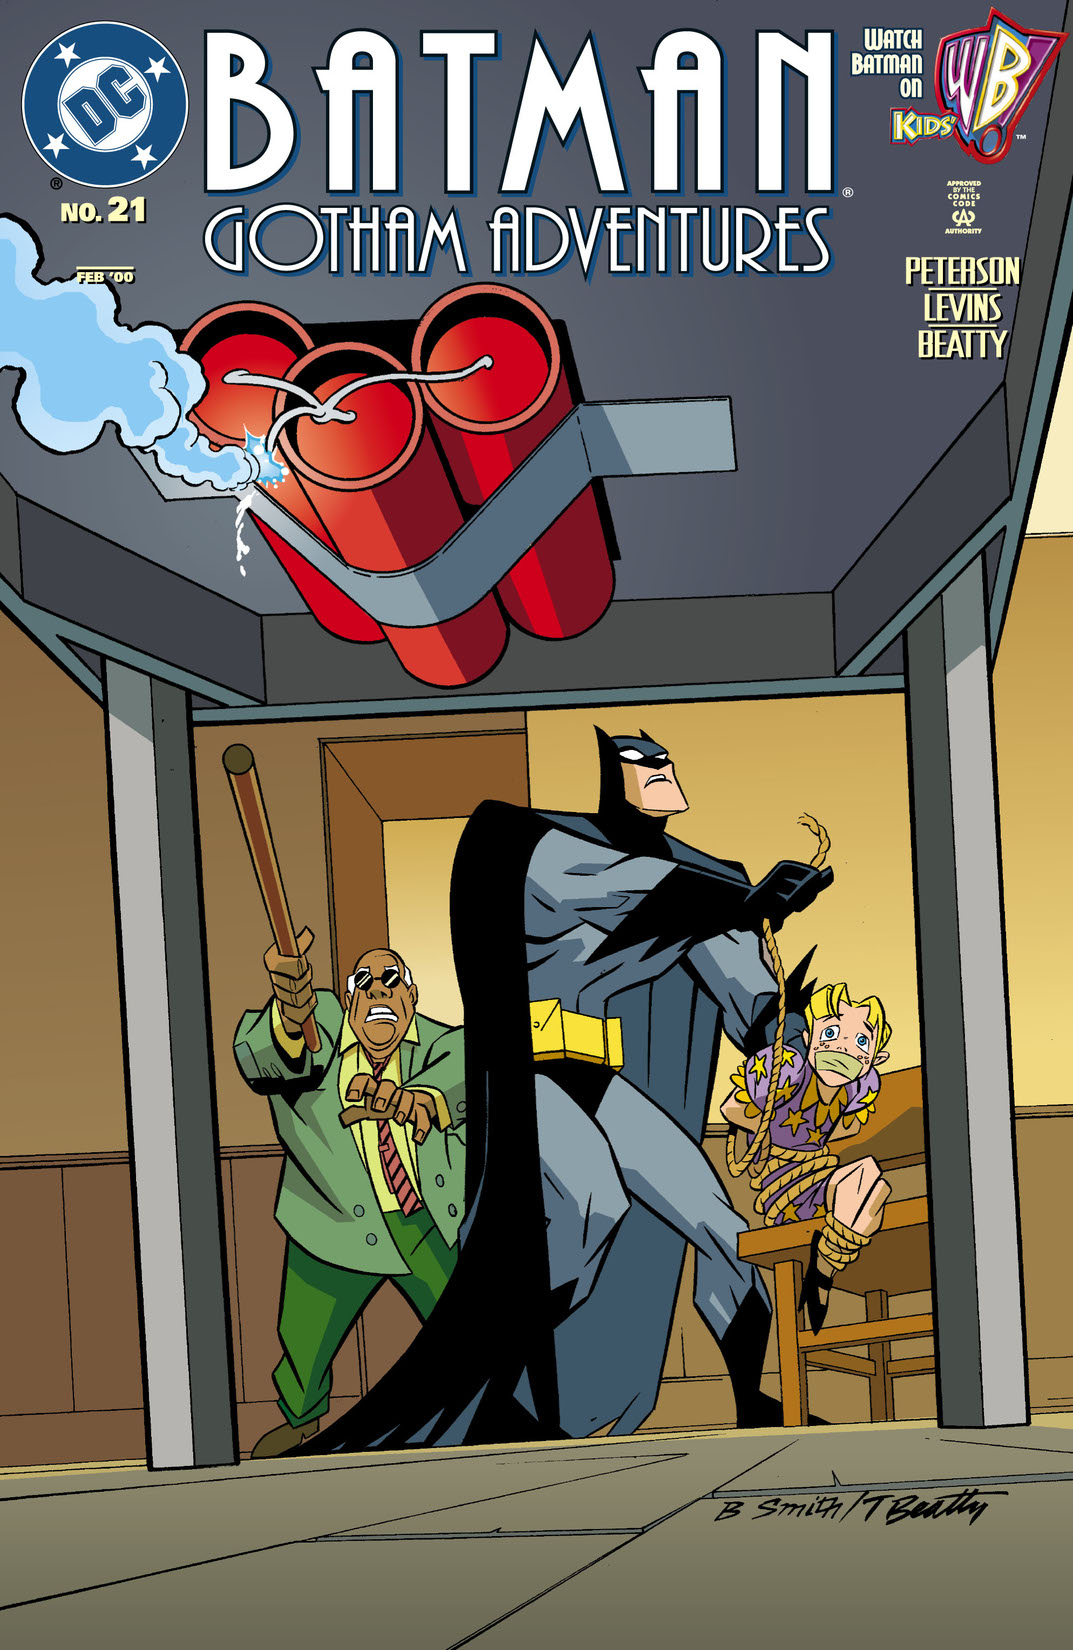 Batman: Gotham Adventures #21 preview images